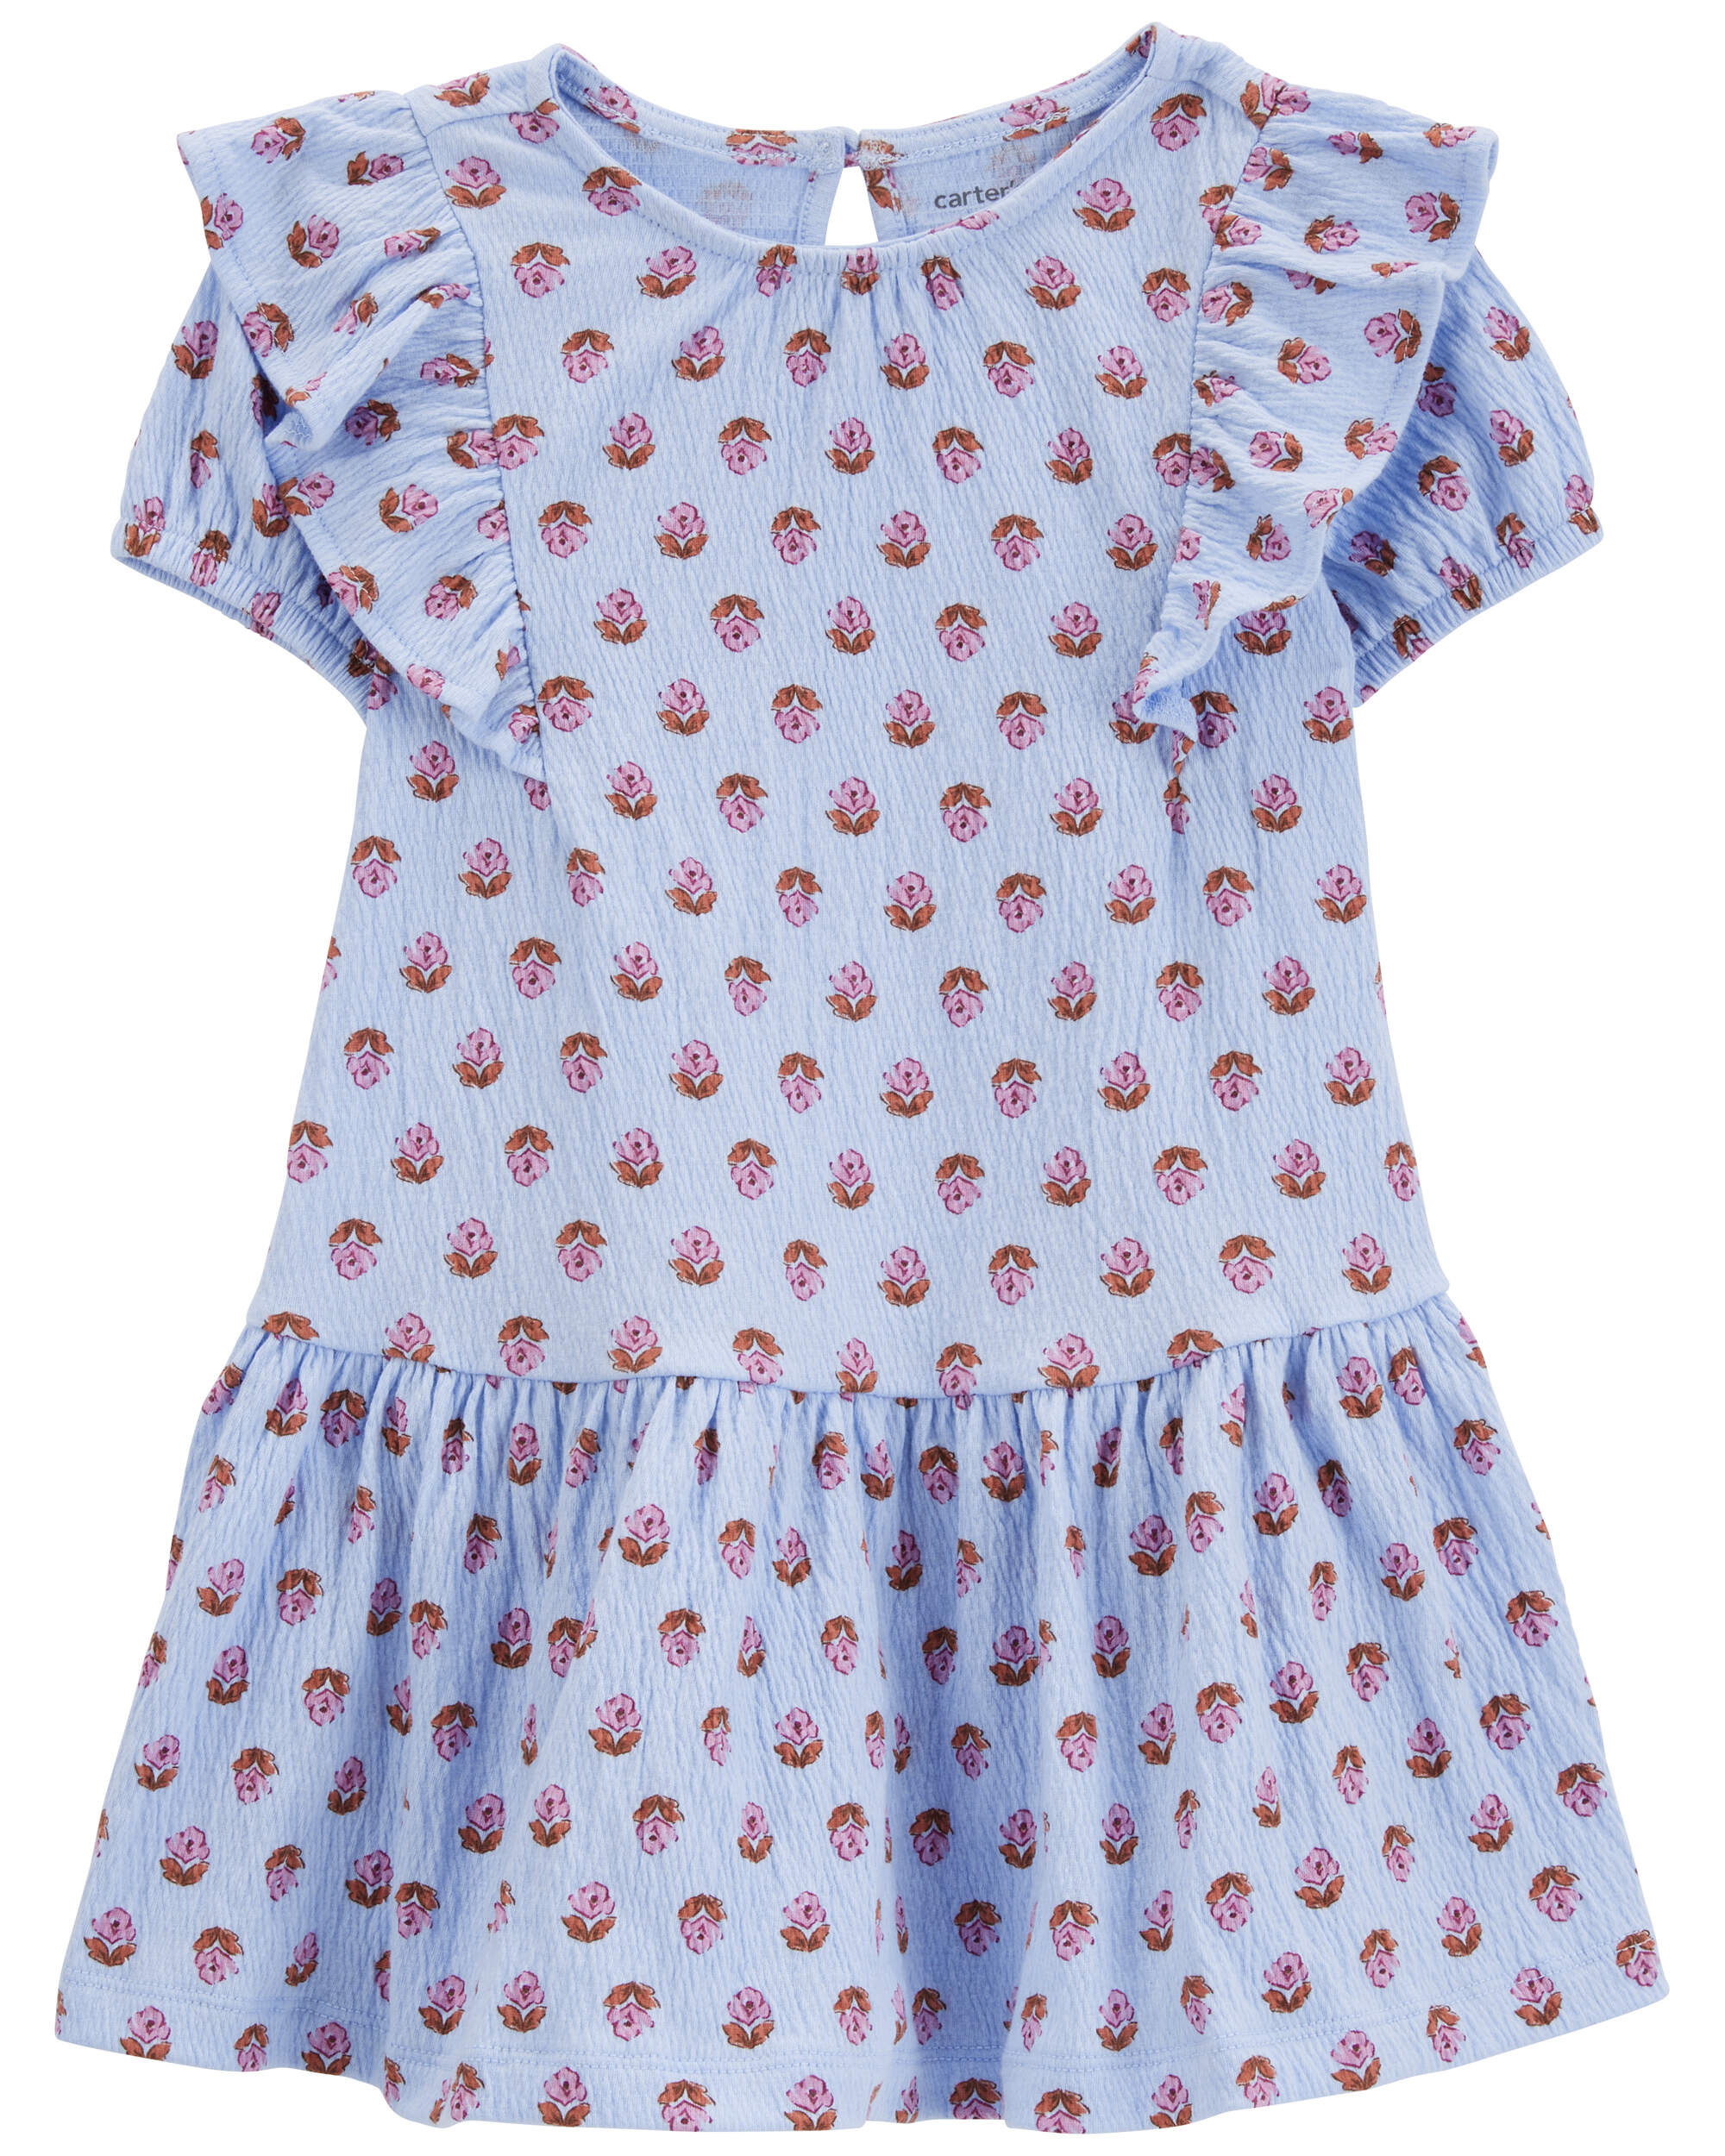 Toddler Floral Crinkle Jersey Dress